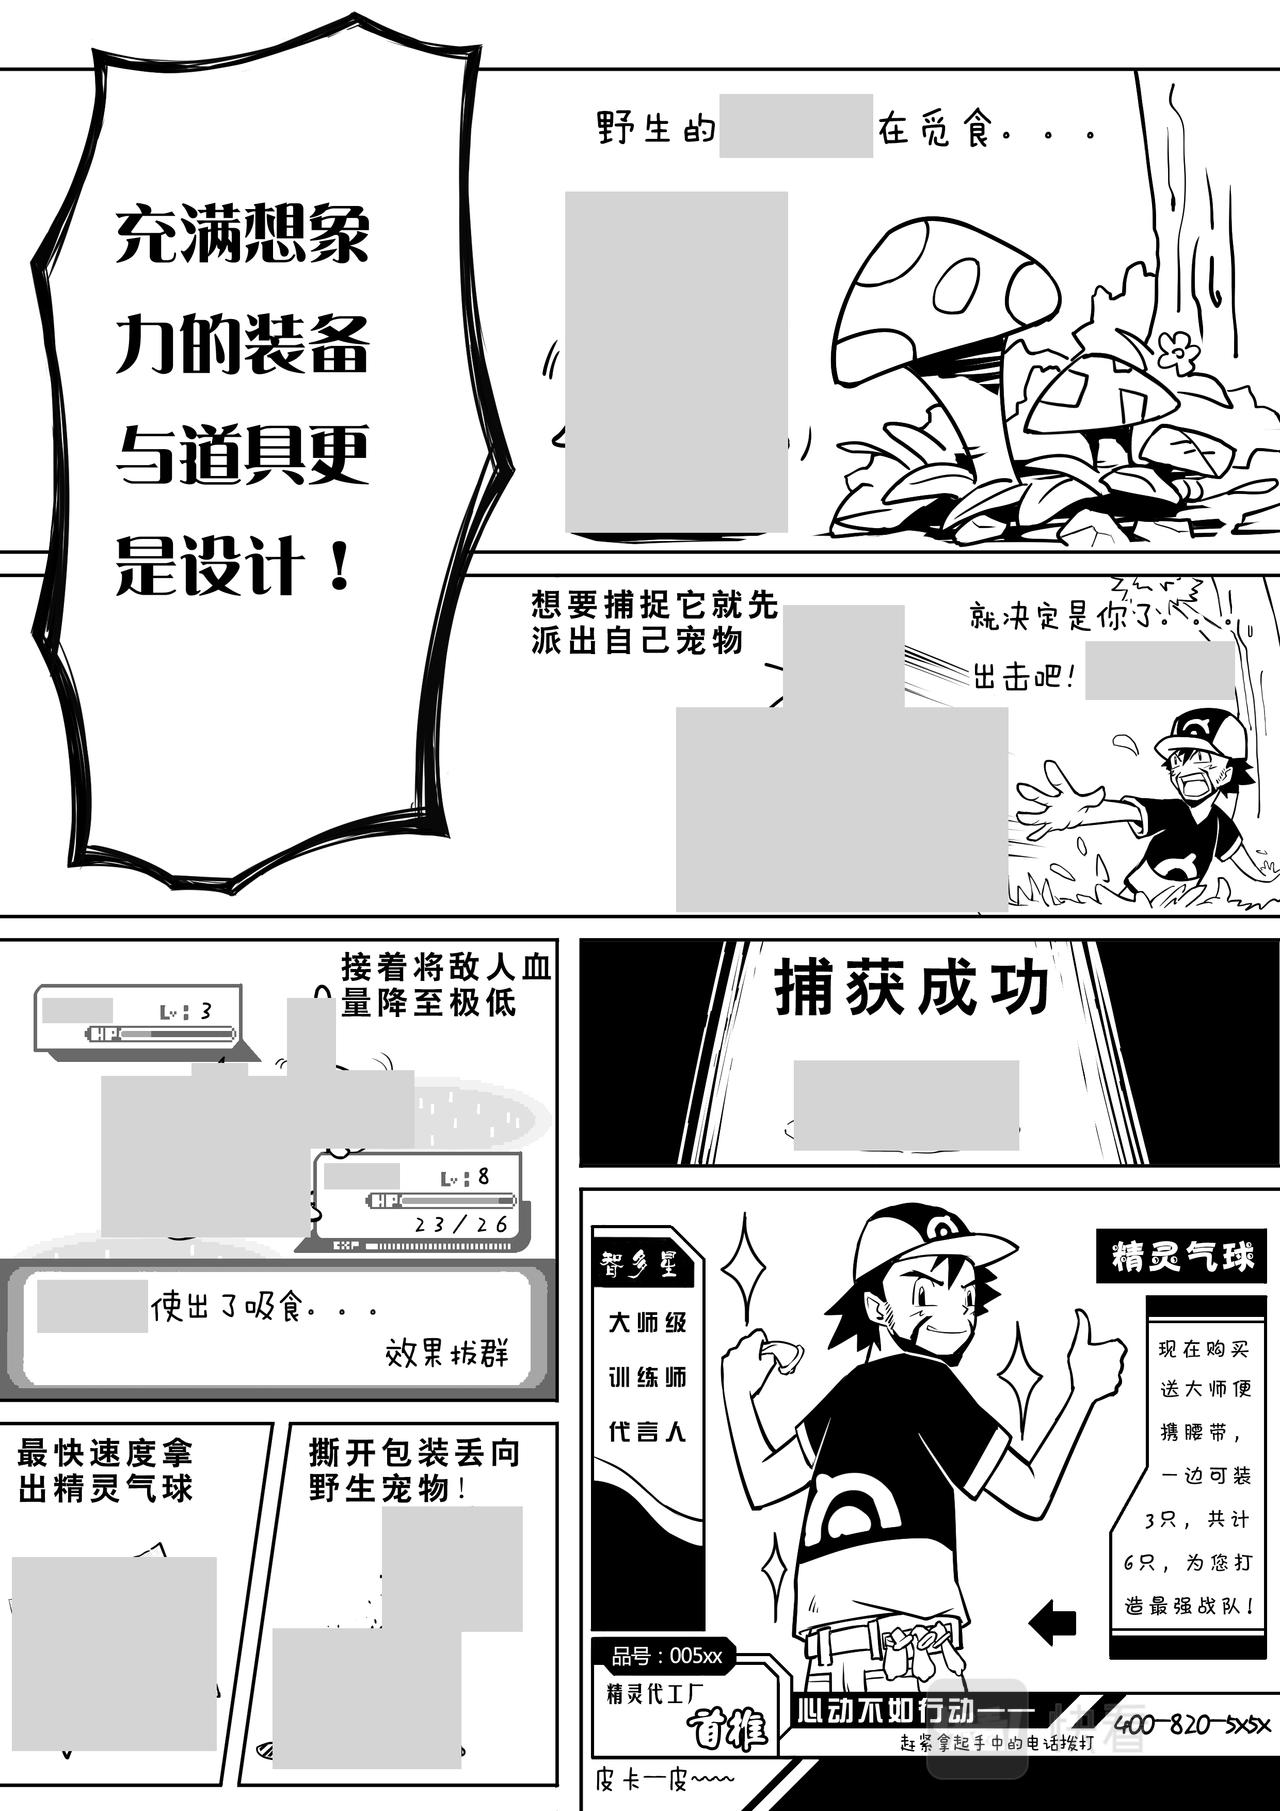 常盤勇者 - 04-少年漫畫篇01 - 2